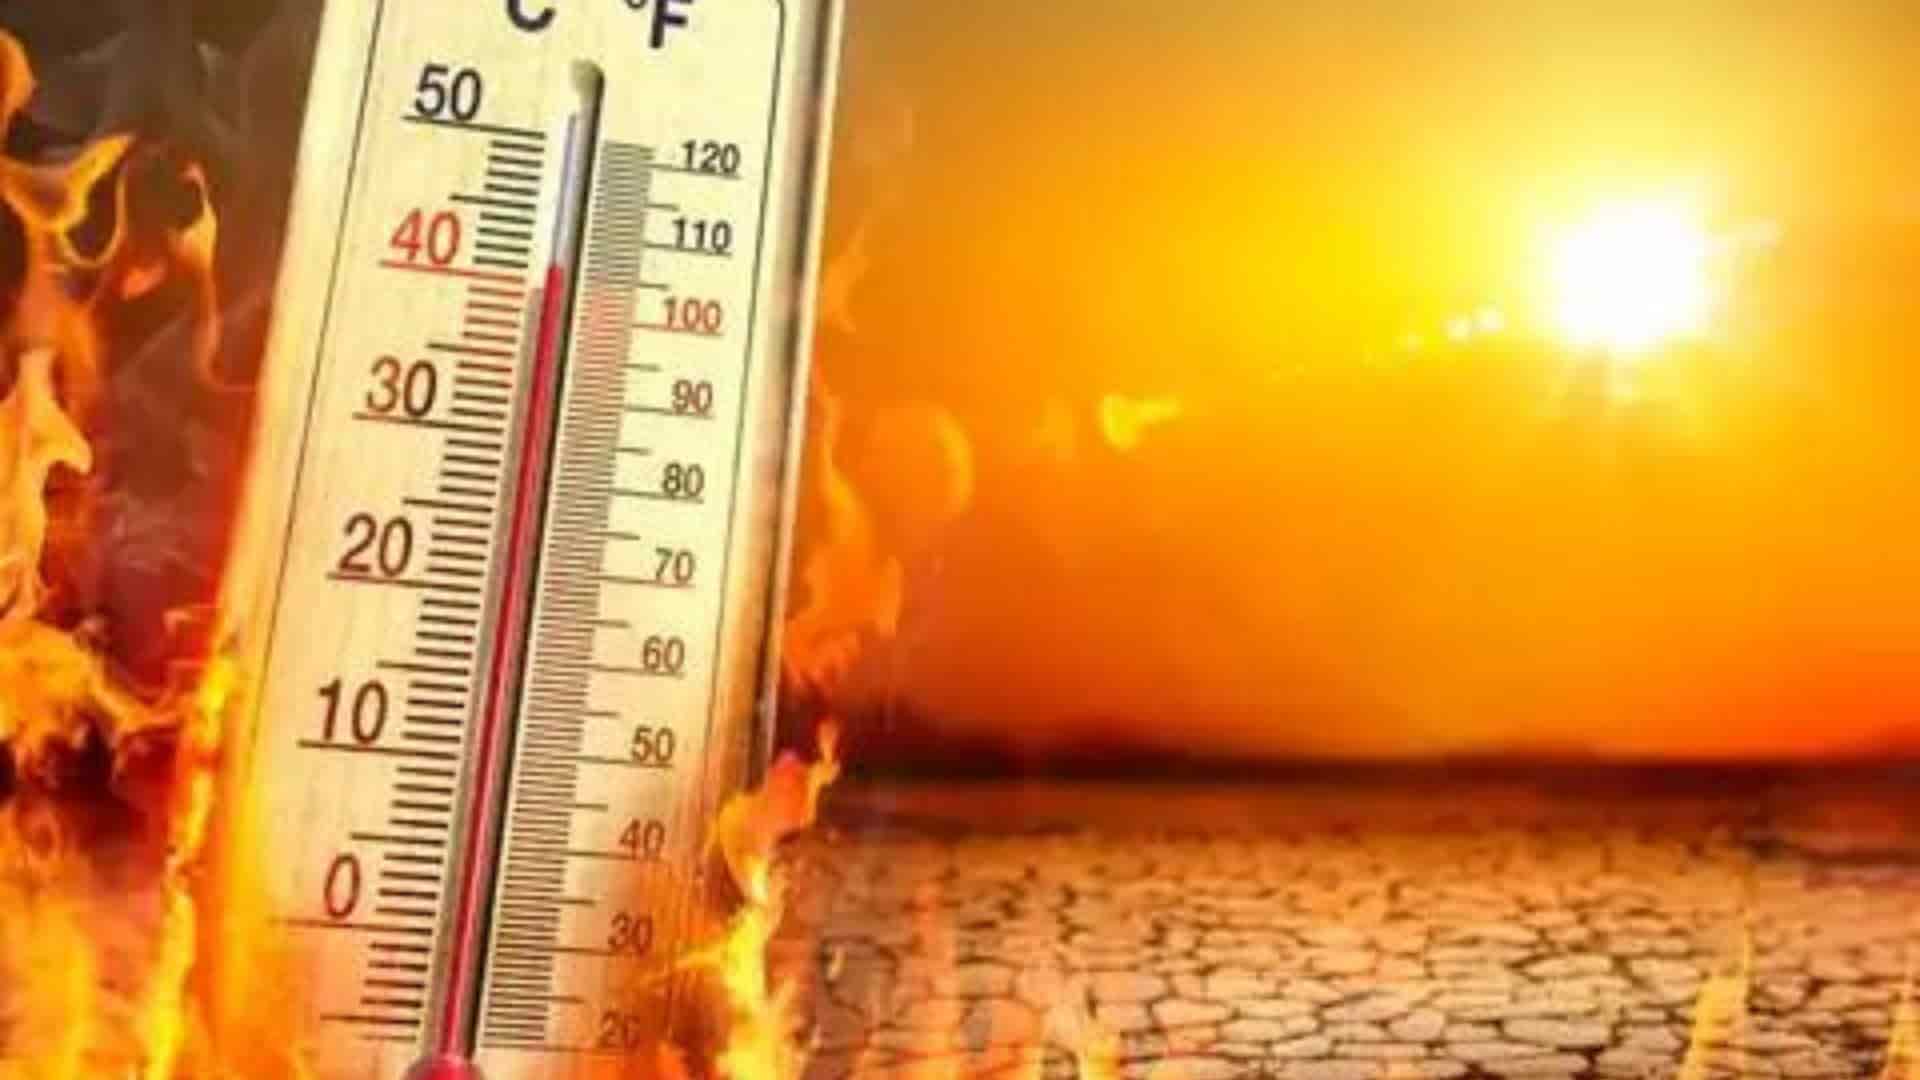 Uttar Pradesh Records 35 Heatwave Deaths, Delhi Reports 21 | Key Updates